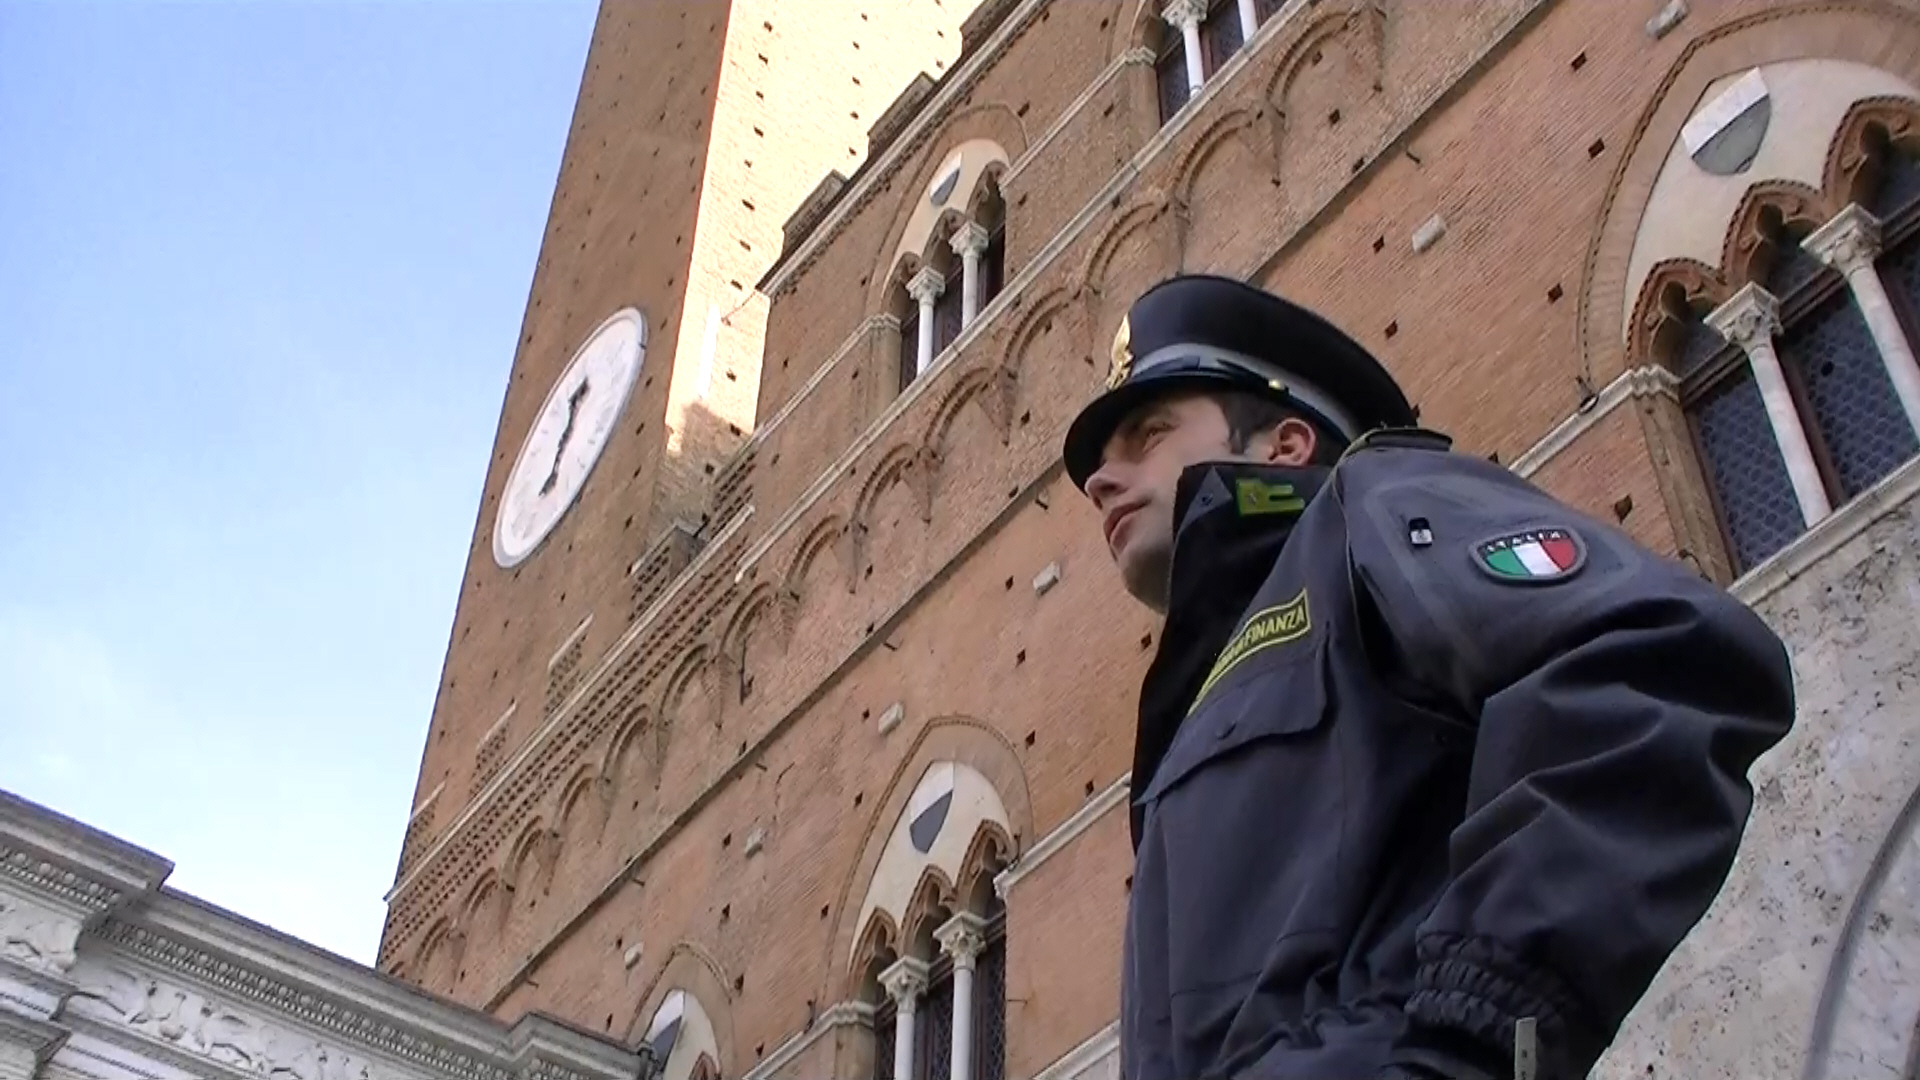 Guardia di Finanza: il bilancio di un anno di interventi a Siena